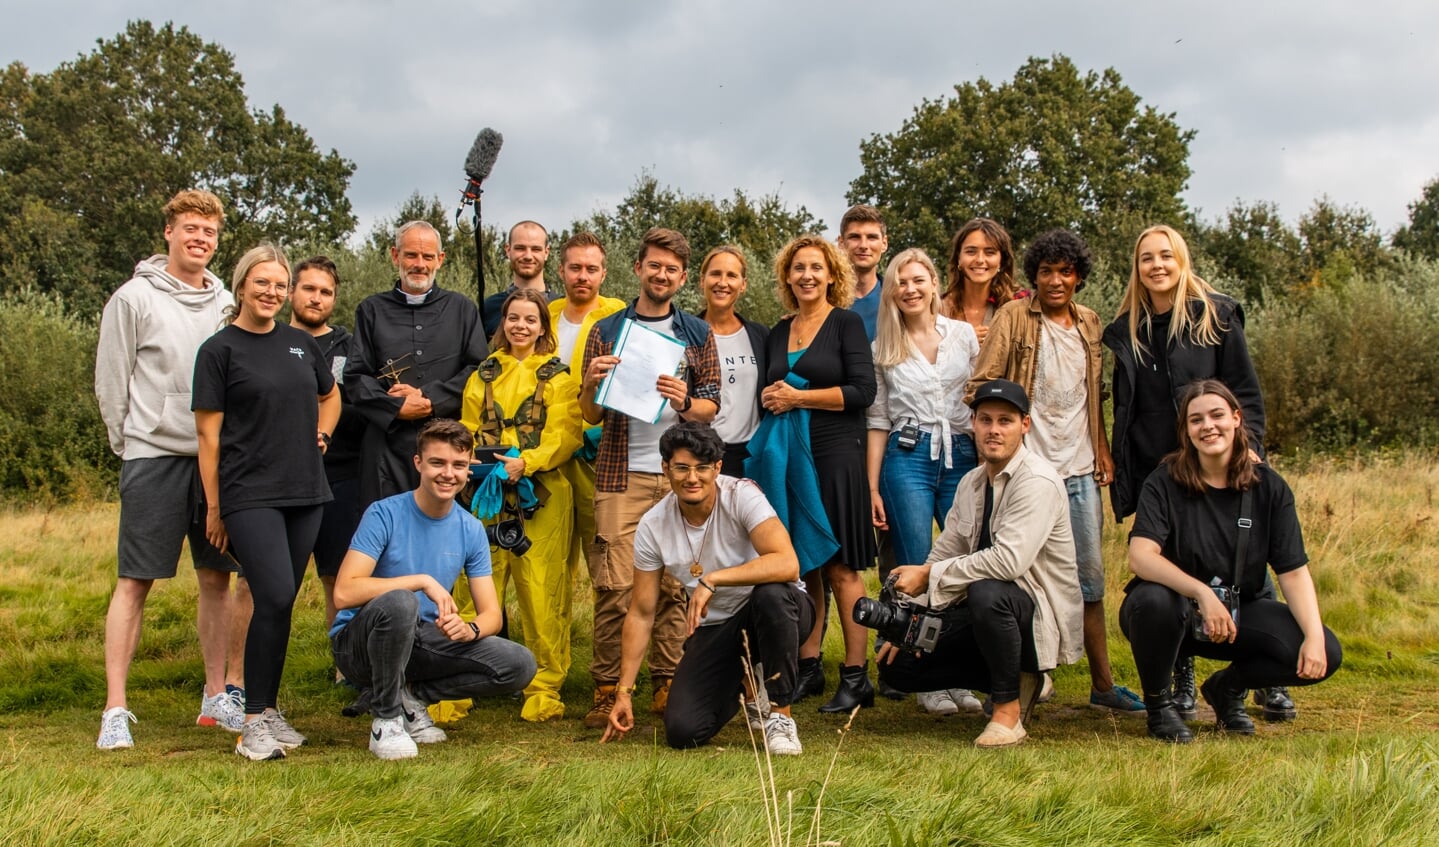 Groepsfoto van de cast en crew van de Bossche korte speelfilm 'Moerasdraak' die maandagavond in première ging in de Verkadefabriek. Deze foto is gemaakt op draaidag 11 in natuurgebied De Moerputten.